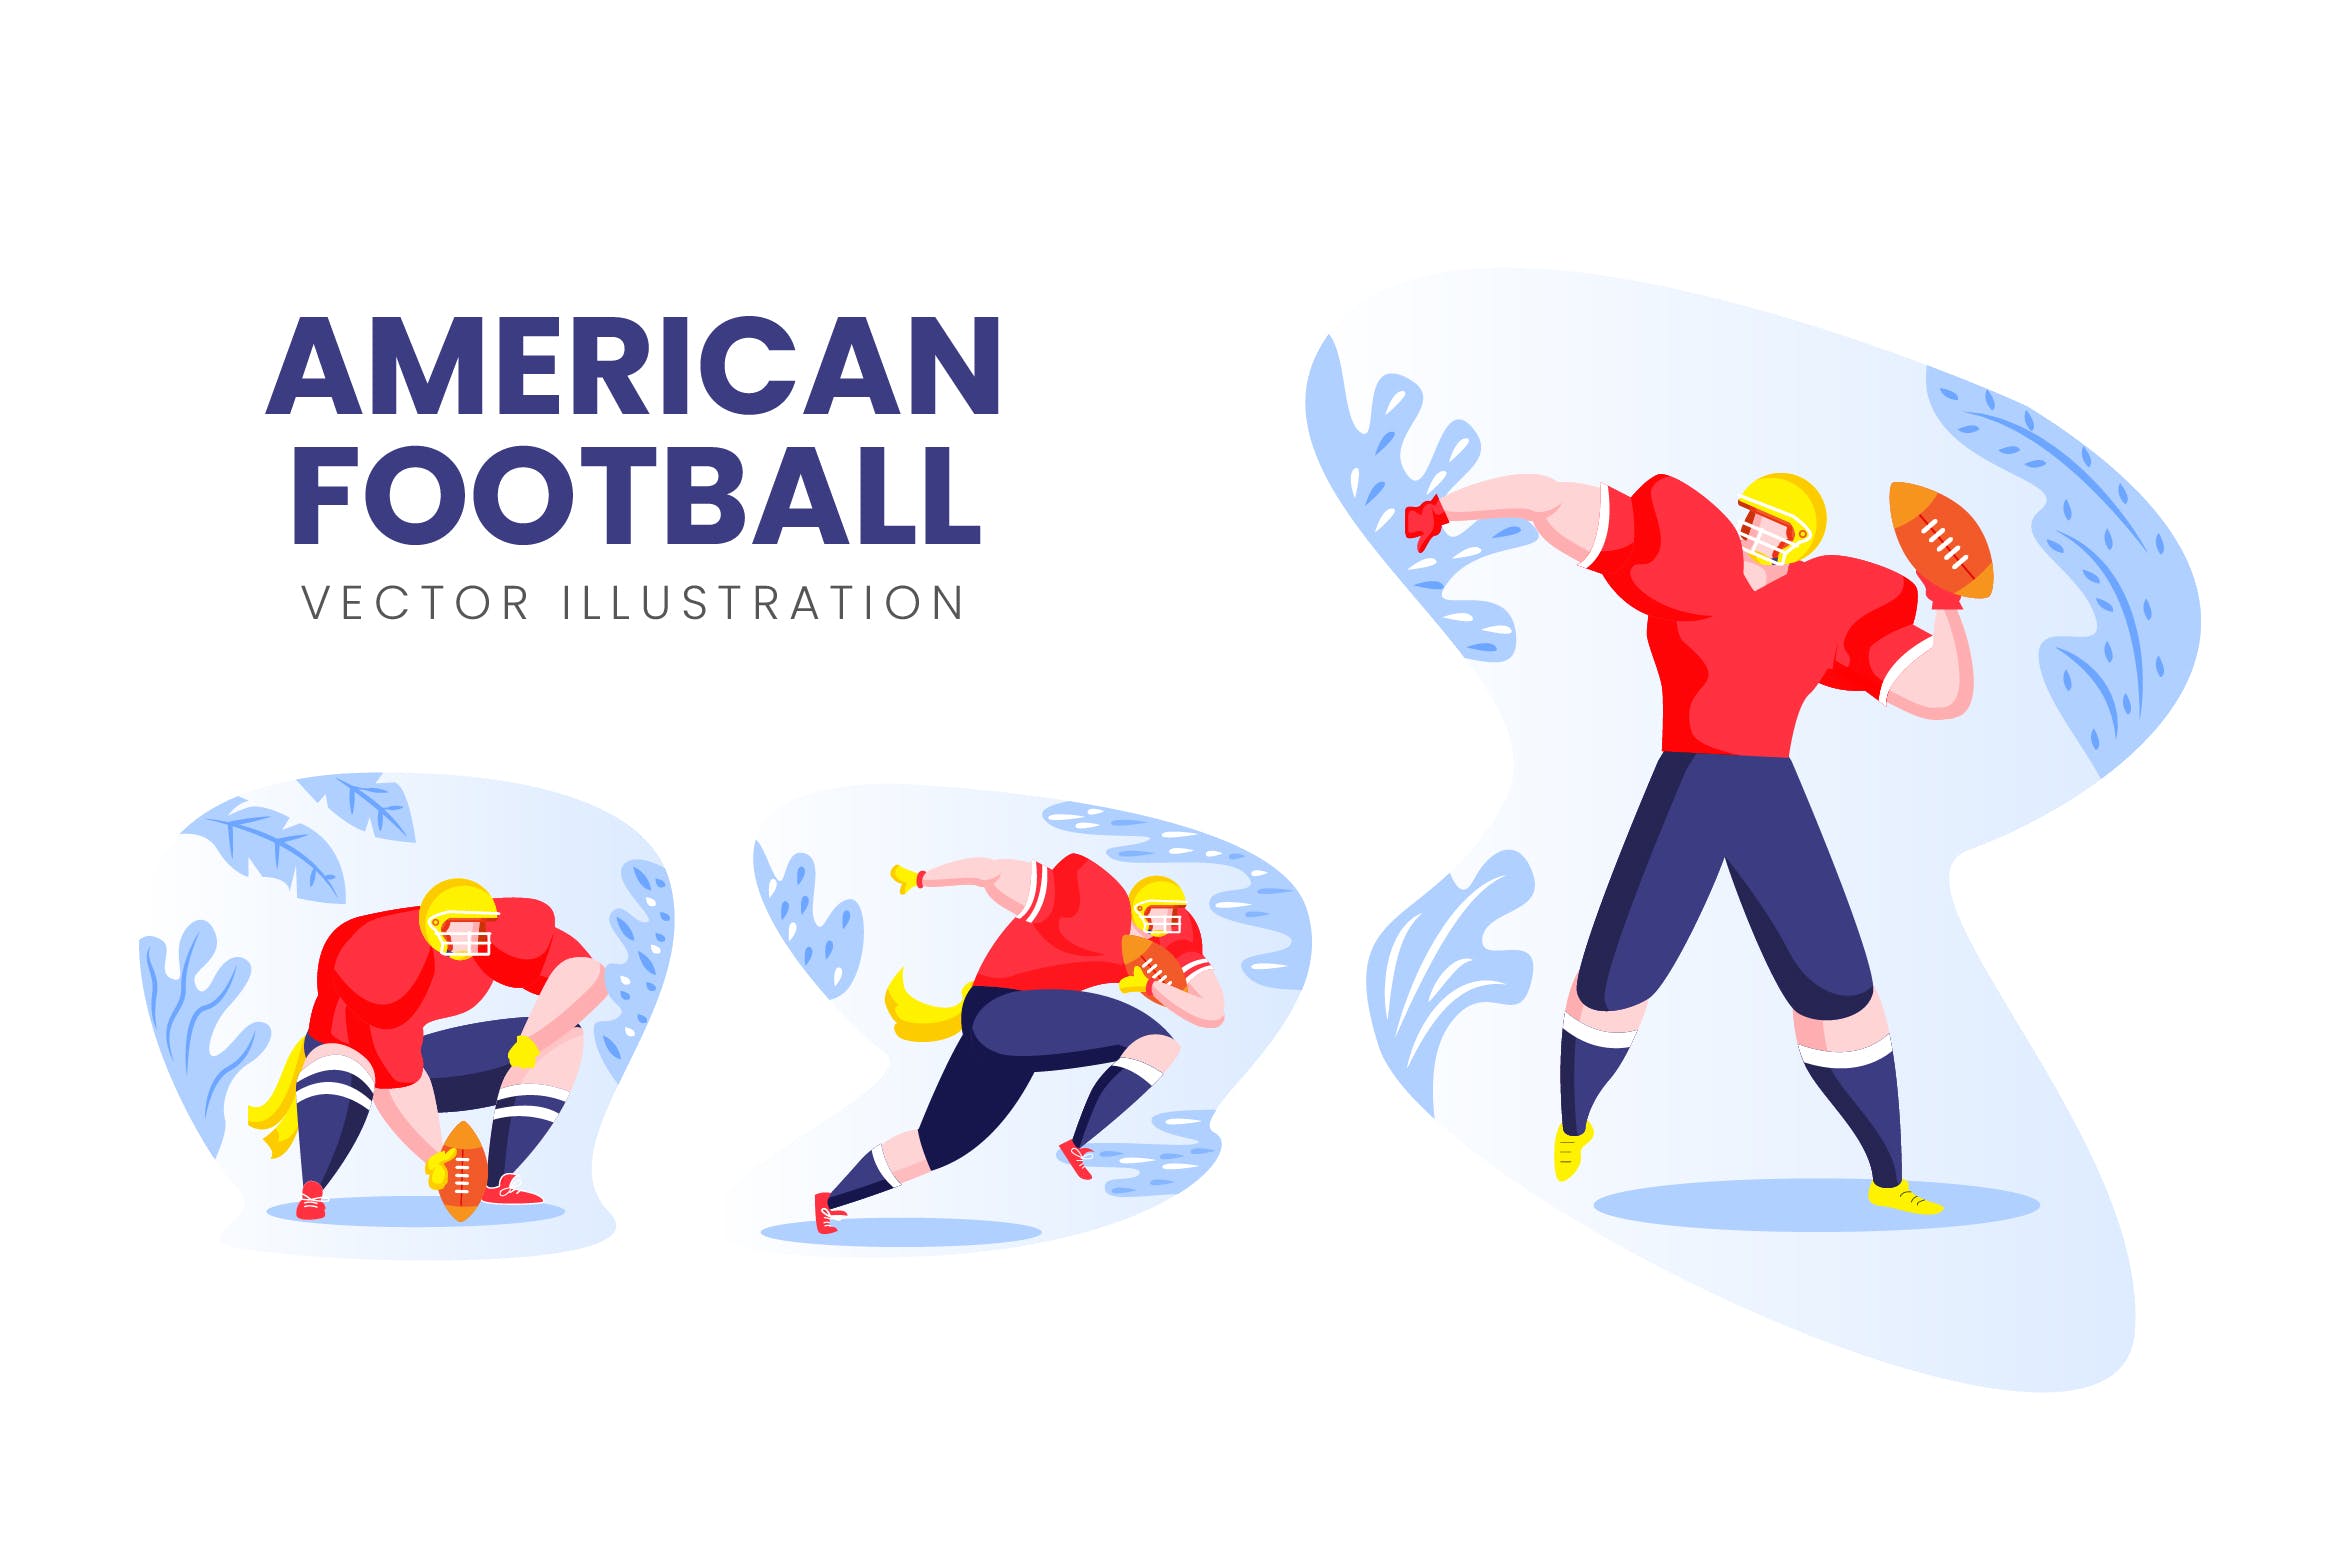 美式足球运动员人物形象蚂蚁素材精选手绘插画矢量素材 American Football Vector Character Set插图